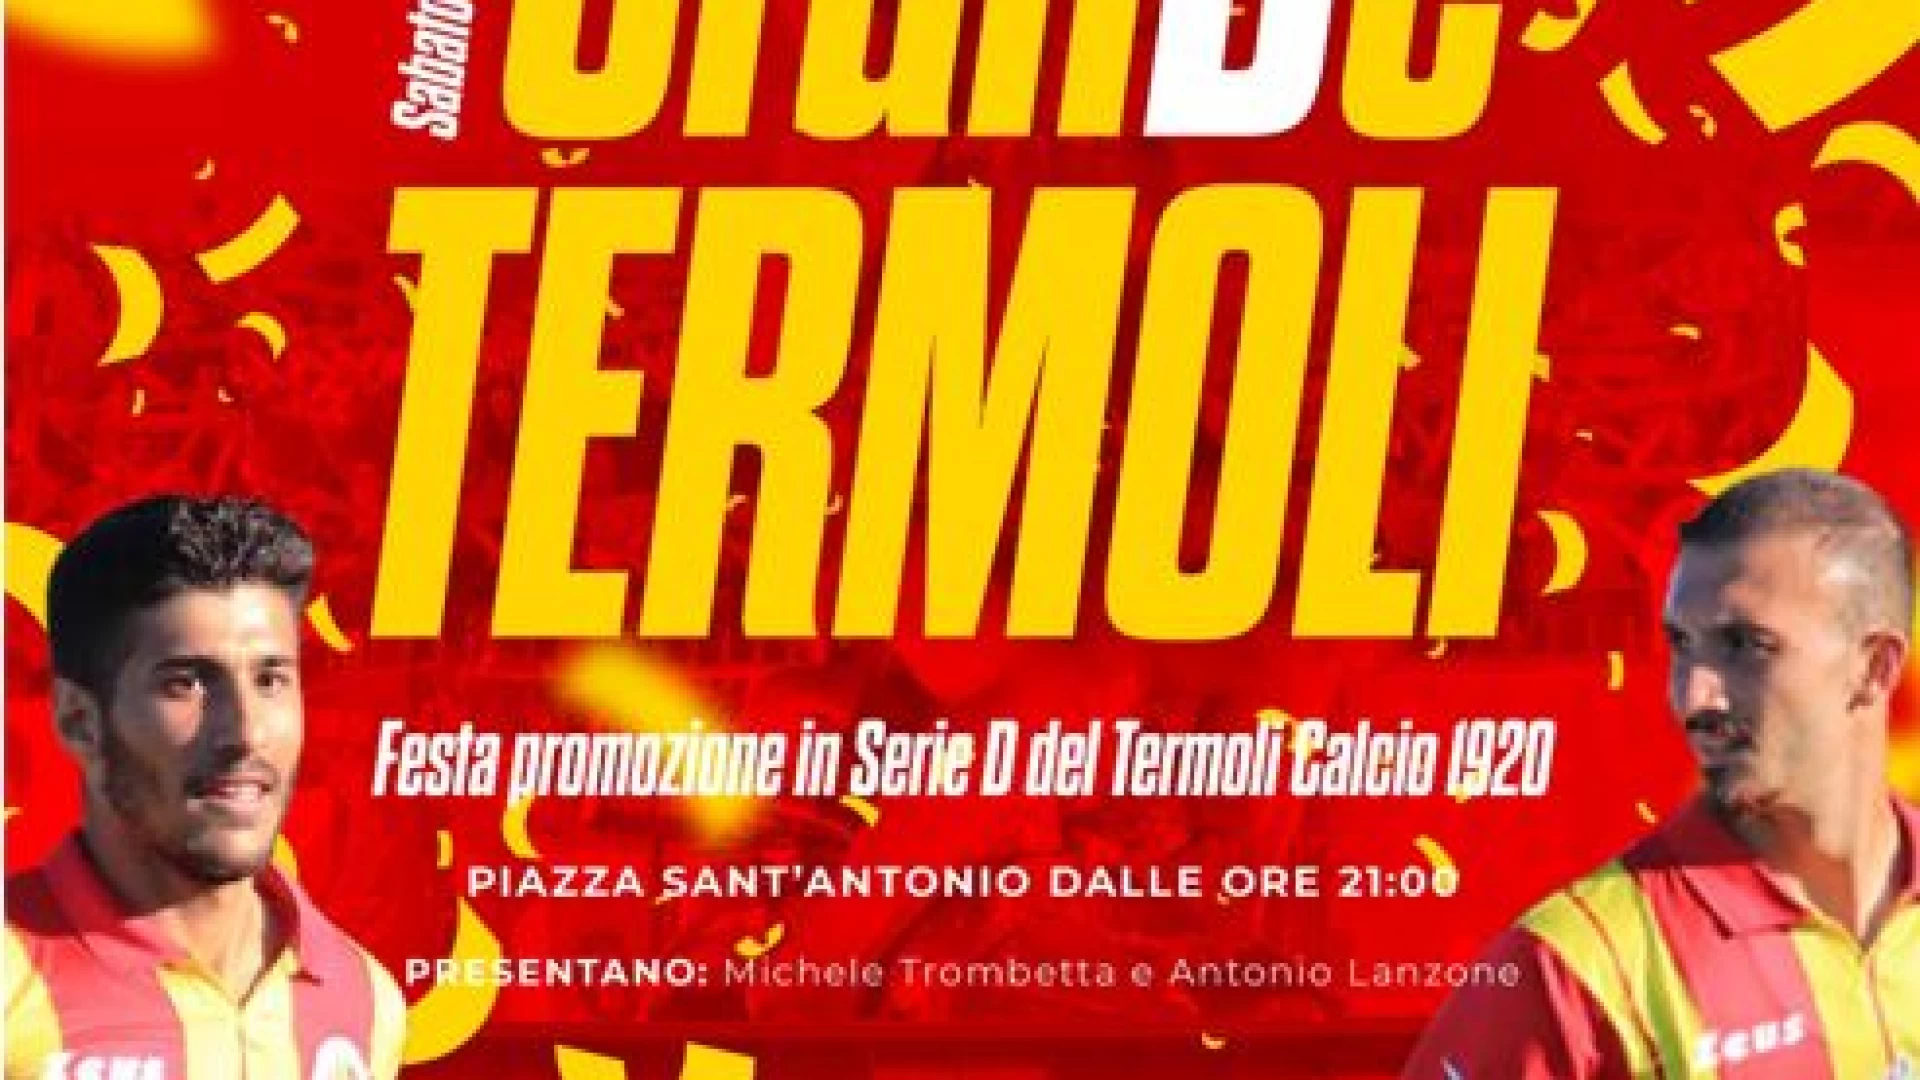 “Grande Termoli”: sabato sera in Piazza Sant’Antonio la festa per la promozione in serie D del Termoli Calcio 1920.